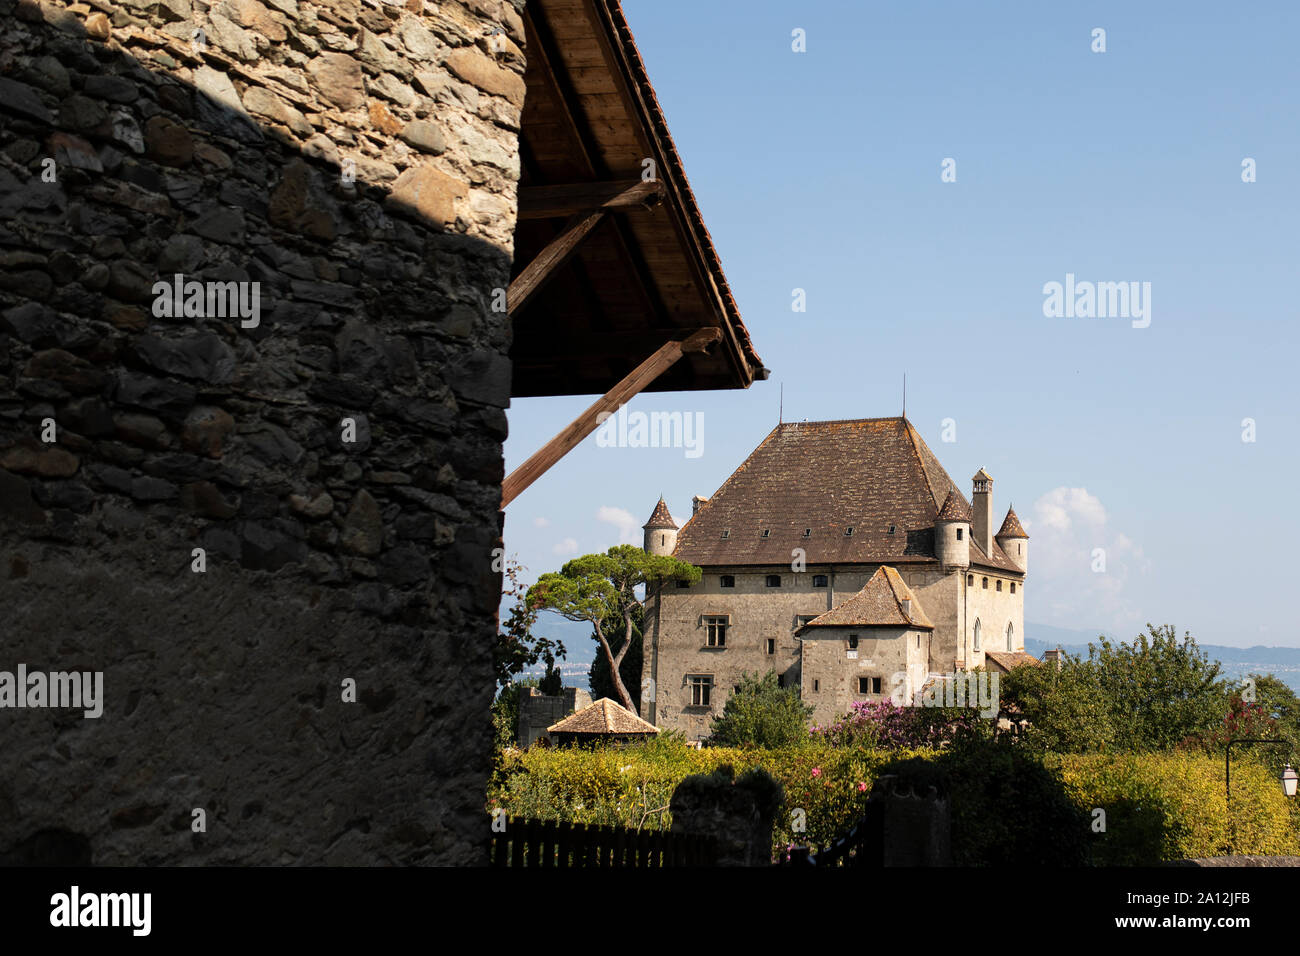 Le Jardin des Cinq Sens et le château de la cité médiévale d'Yvoire, Haute-Savoie, Auvergne-Rhône-Alpes, France. Banque D'Images